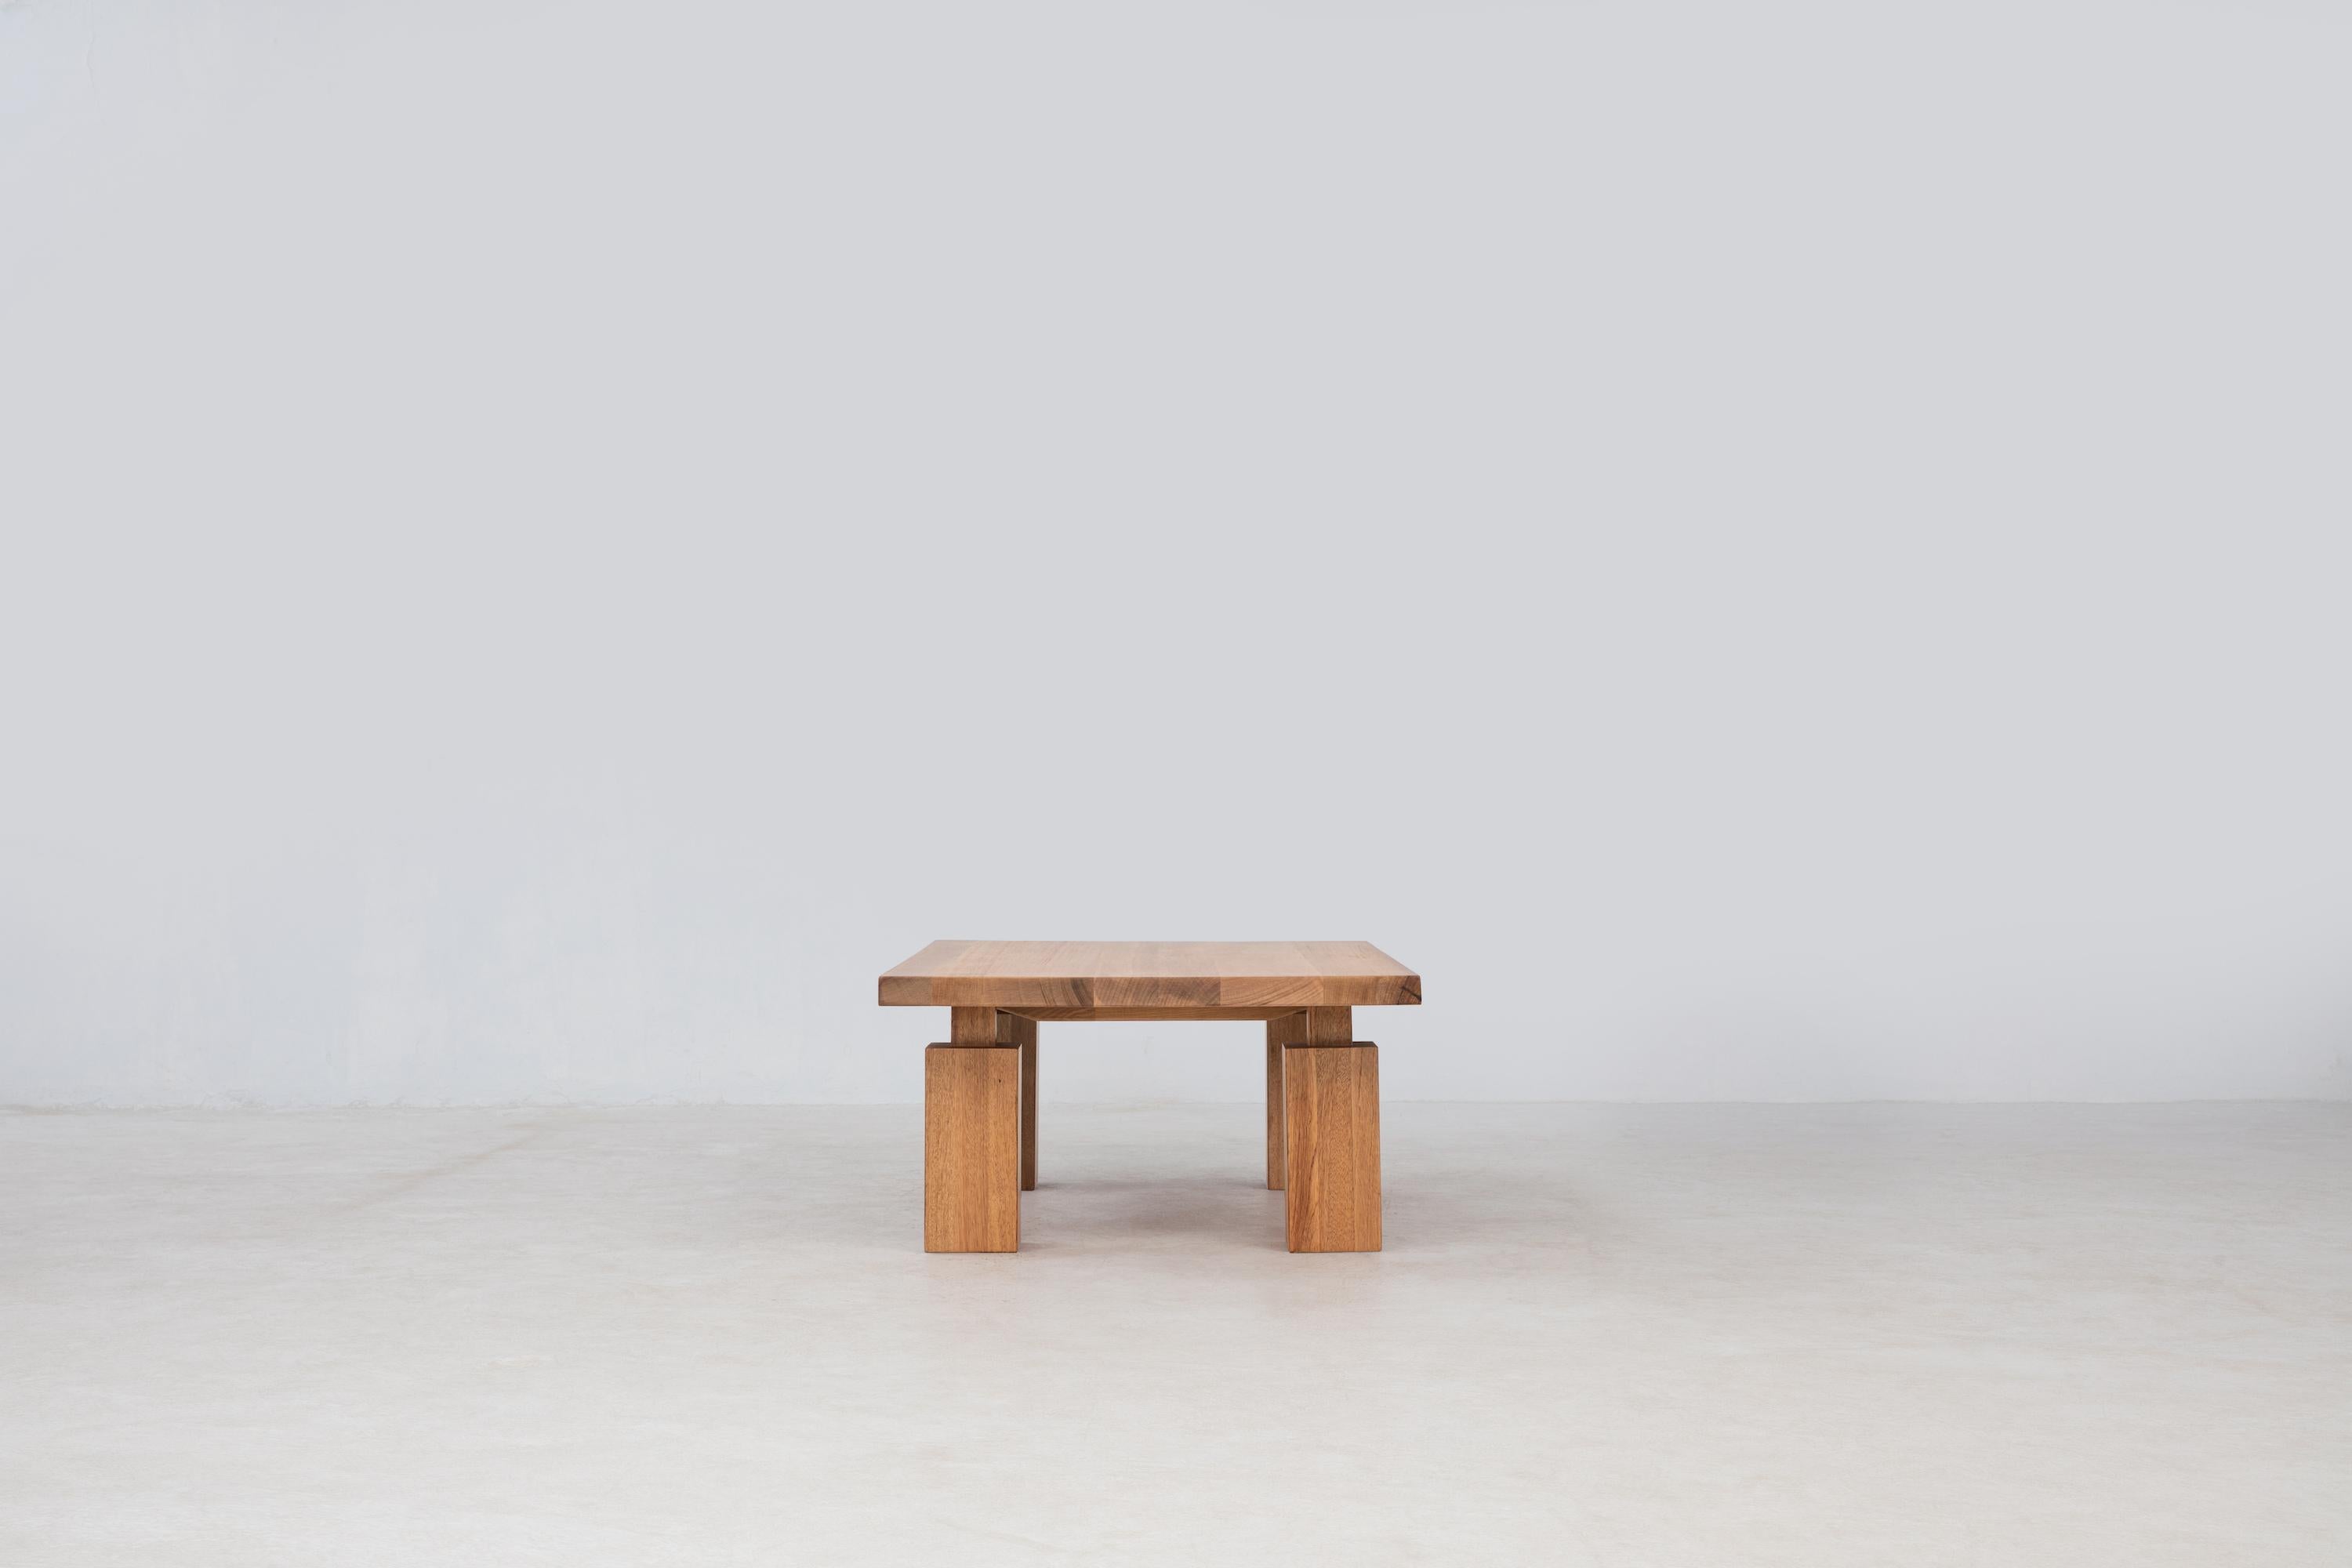 La table basse Wolo présente le beau grain et l'éclat luminescent du bois Makata, en mettant l'accent sur le contraste en tant que concept directeur. Les pieds en forme de colonne se caractérisent par des pattes épaisses attachées par un tissu